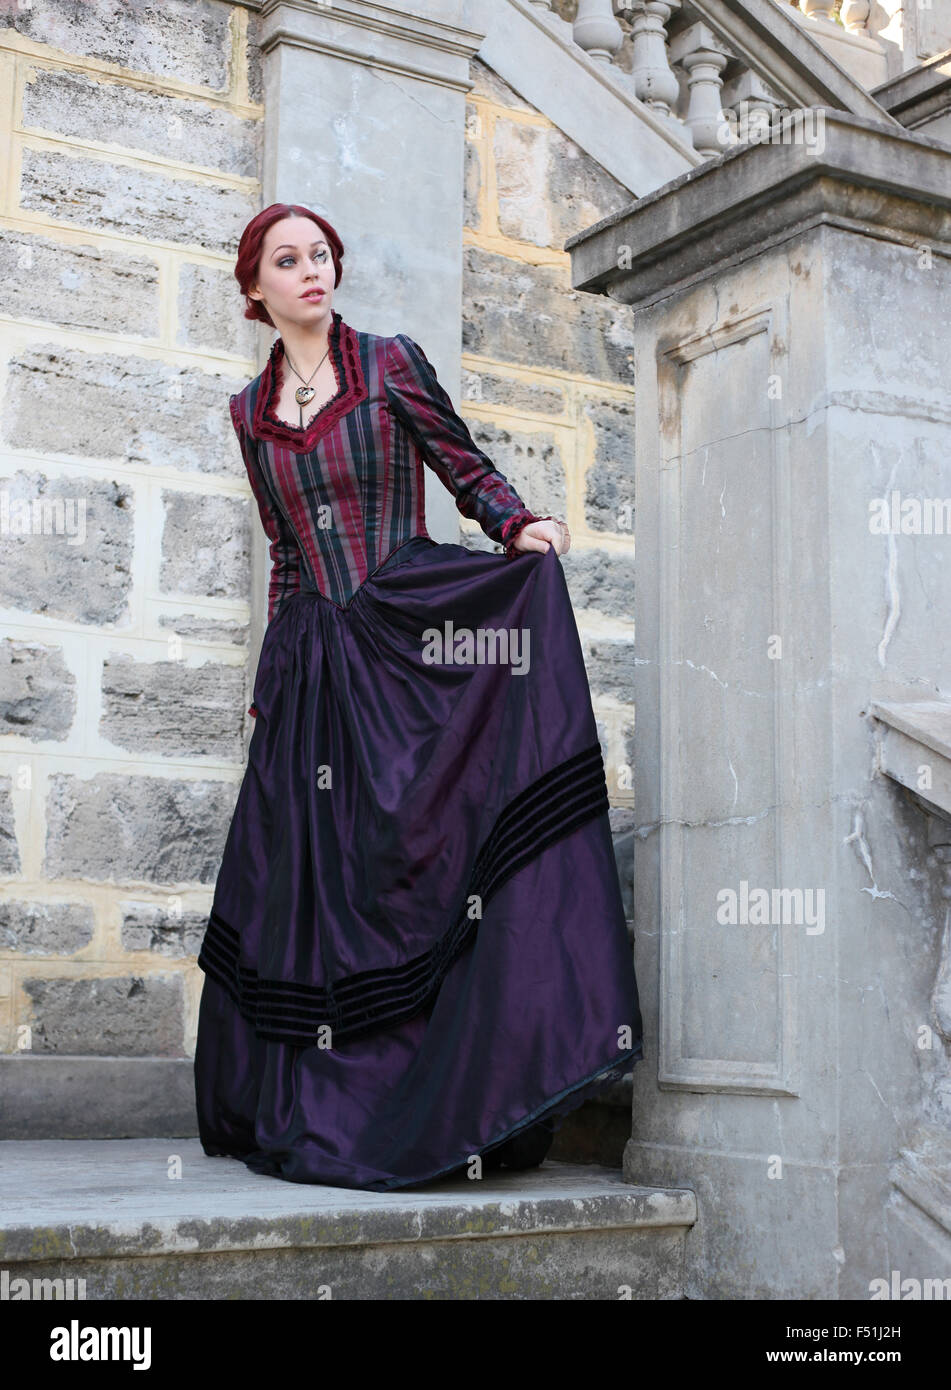 Porträt von einem schönen roten Haaren Mädchen tragen gotisch inspirierte viktorianischen Kleidung. Vampir oder historische Romanze Ära. Stockfoto